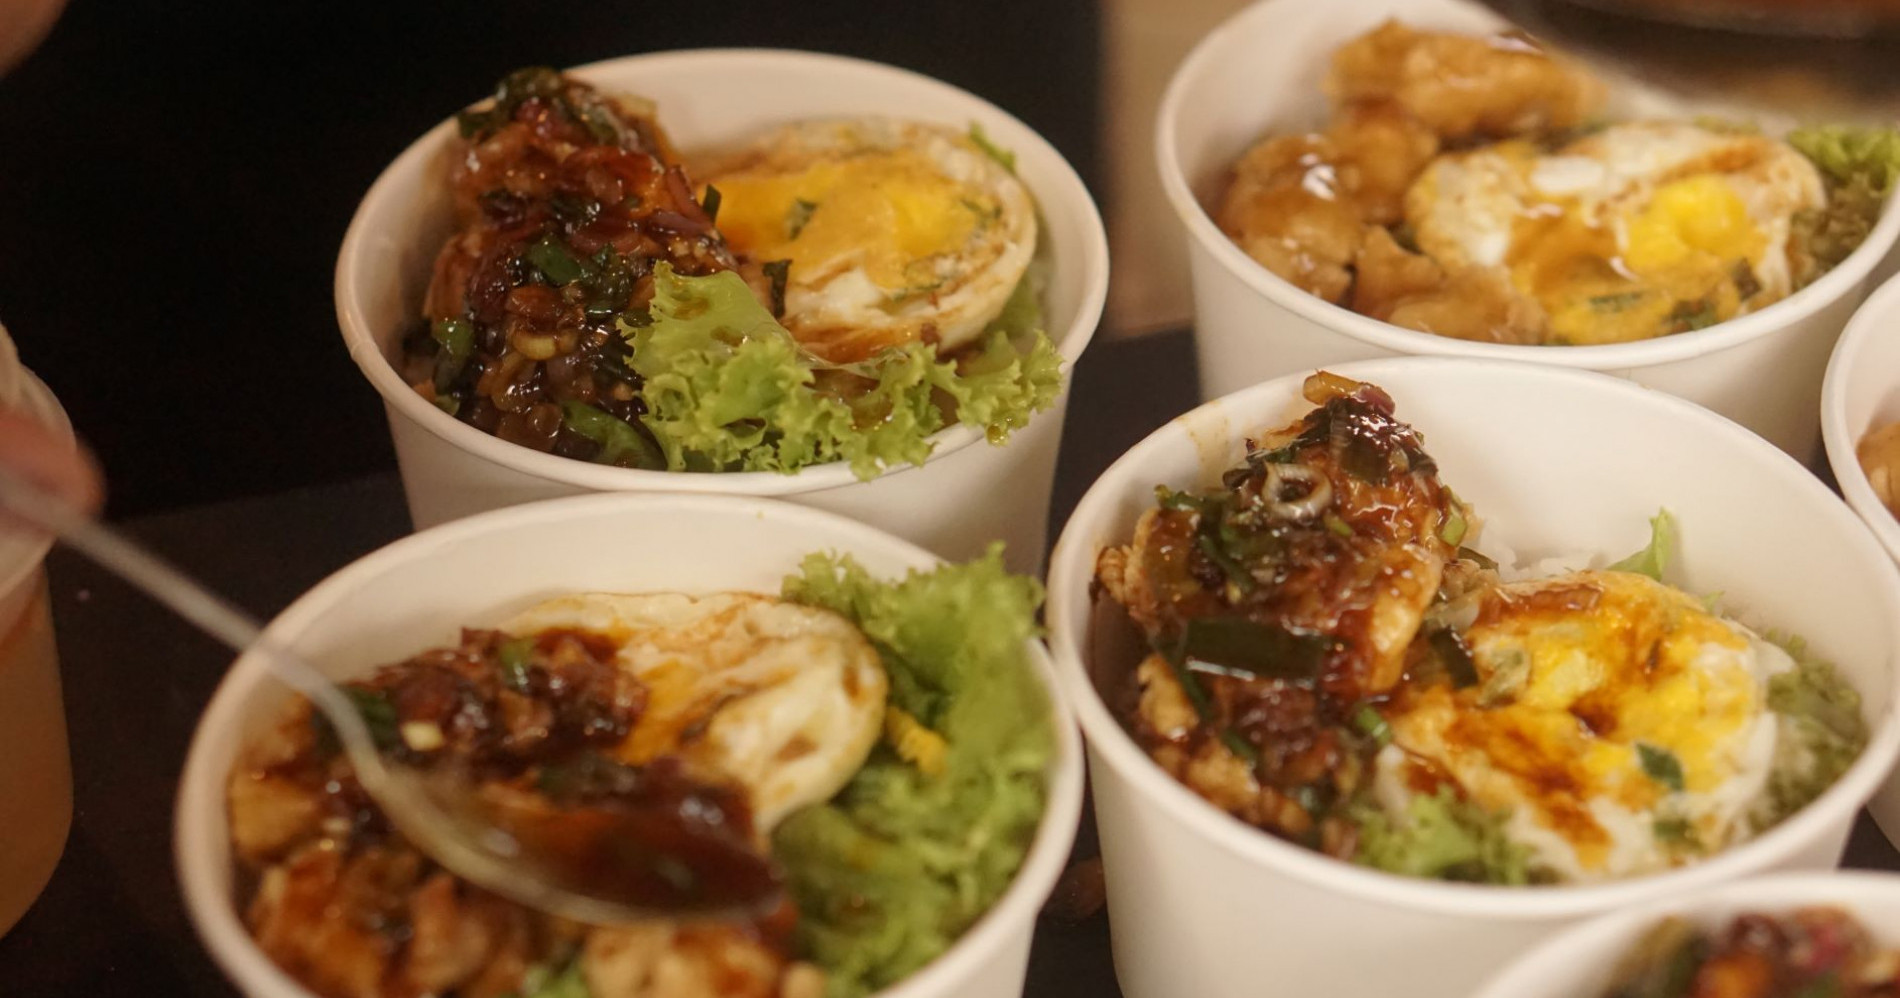 Ruseel Rice Bowl, enak dan praktis, bisa dimakan di mana saja. (Dok. pribadi)